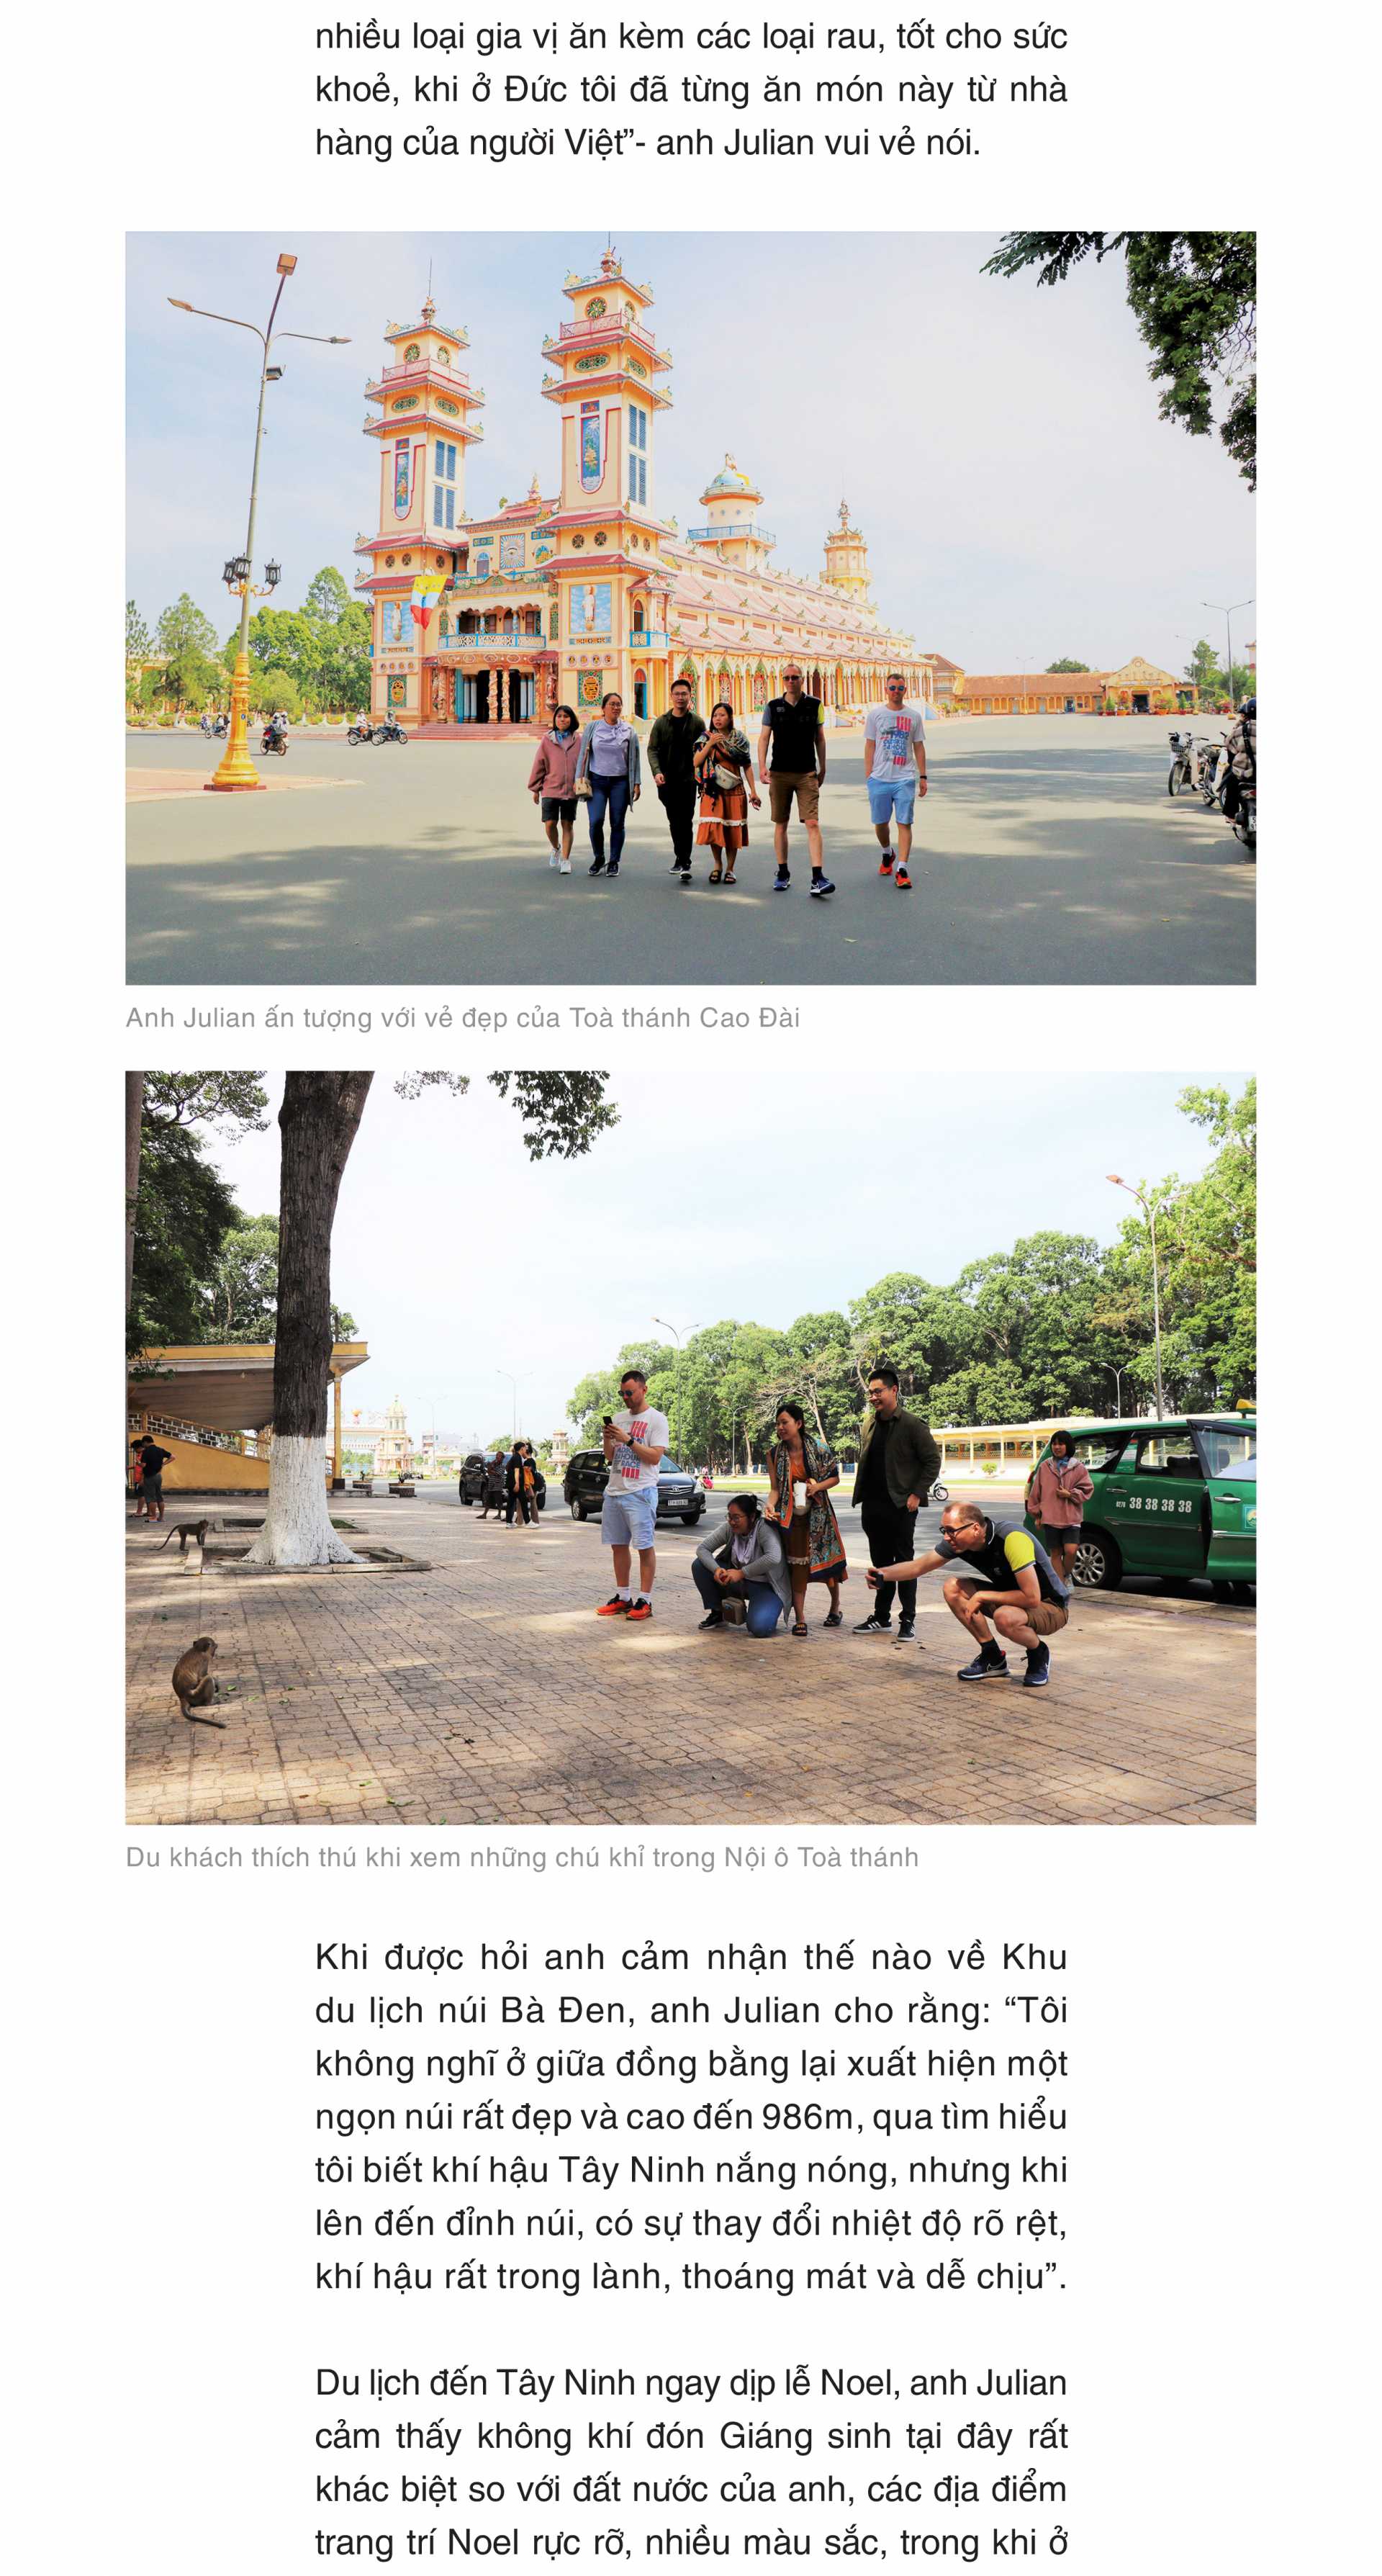 Du lịch Tây Ninh - góc nhìn của du khách quốc tế